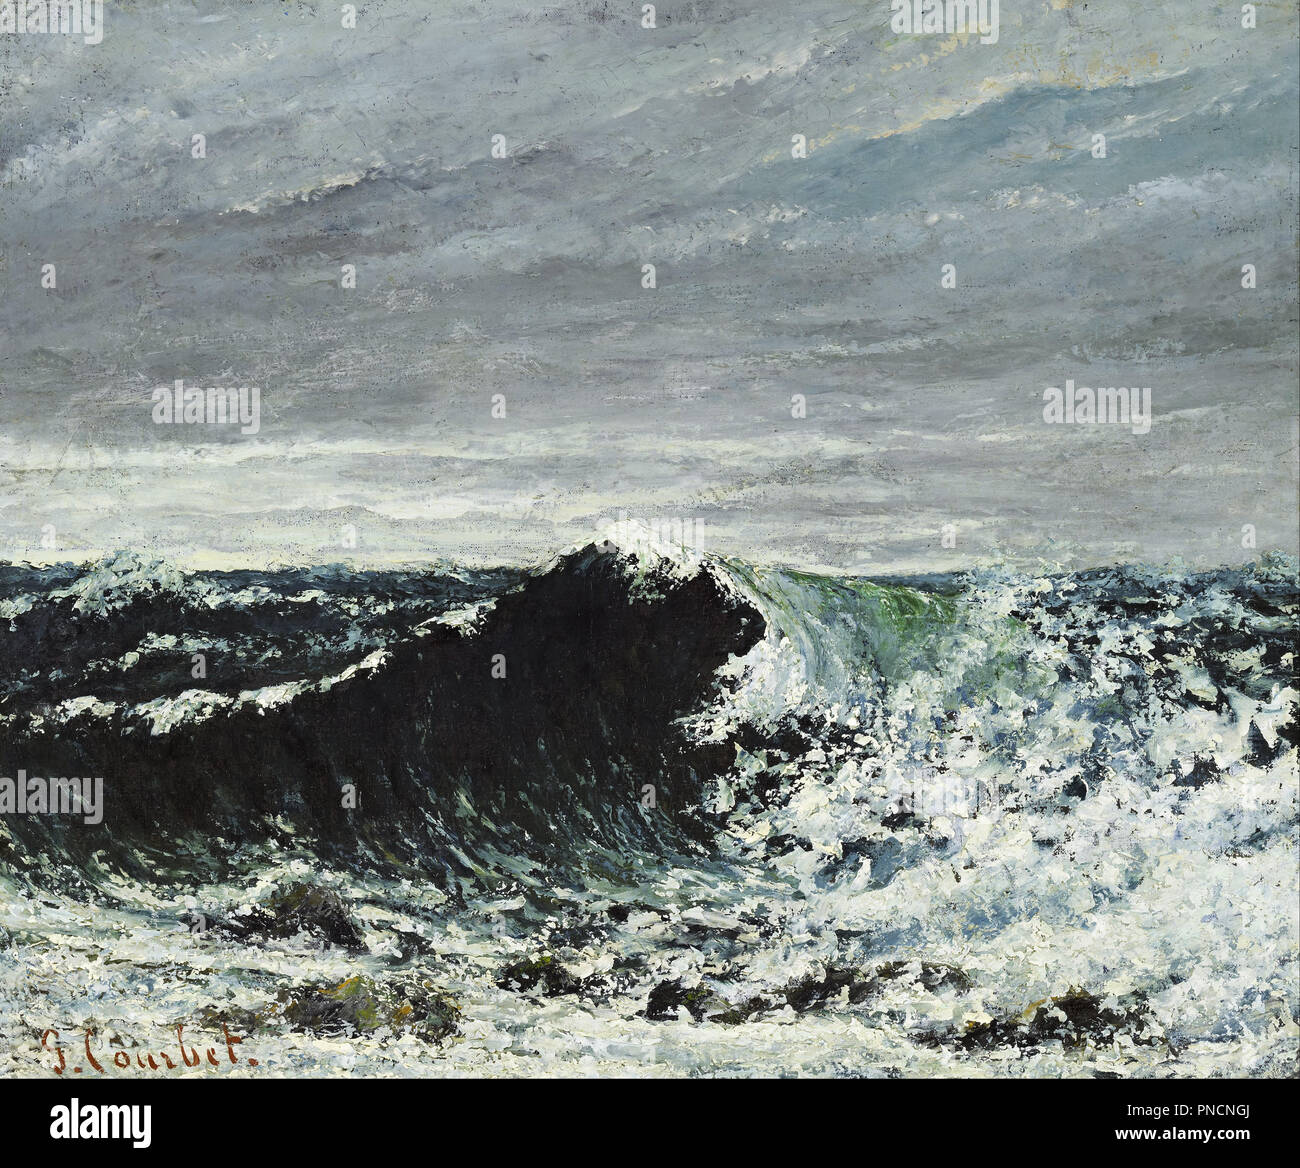 La ola. Fecha/período: 1869. La pintura. Óleo sobre lienzo. Altura: 460 mm  (18.11"); anchura: 550 mm (21,65). Autor: Gustave Courbet Fotografía de  stock - Alamy